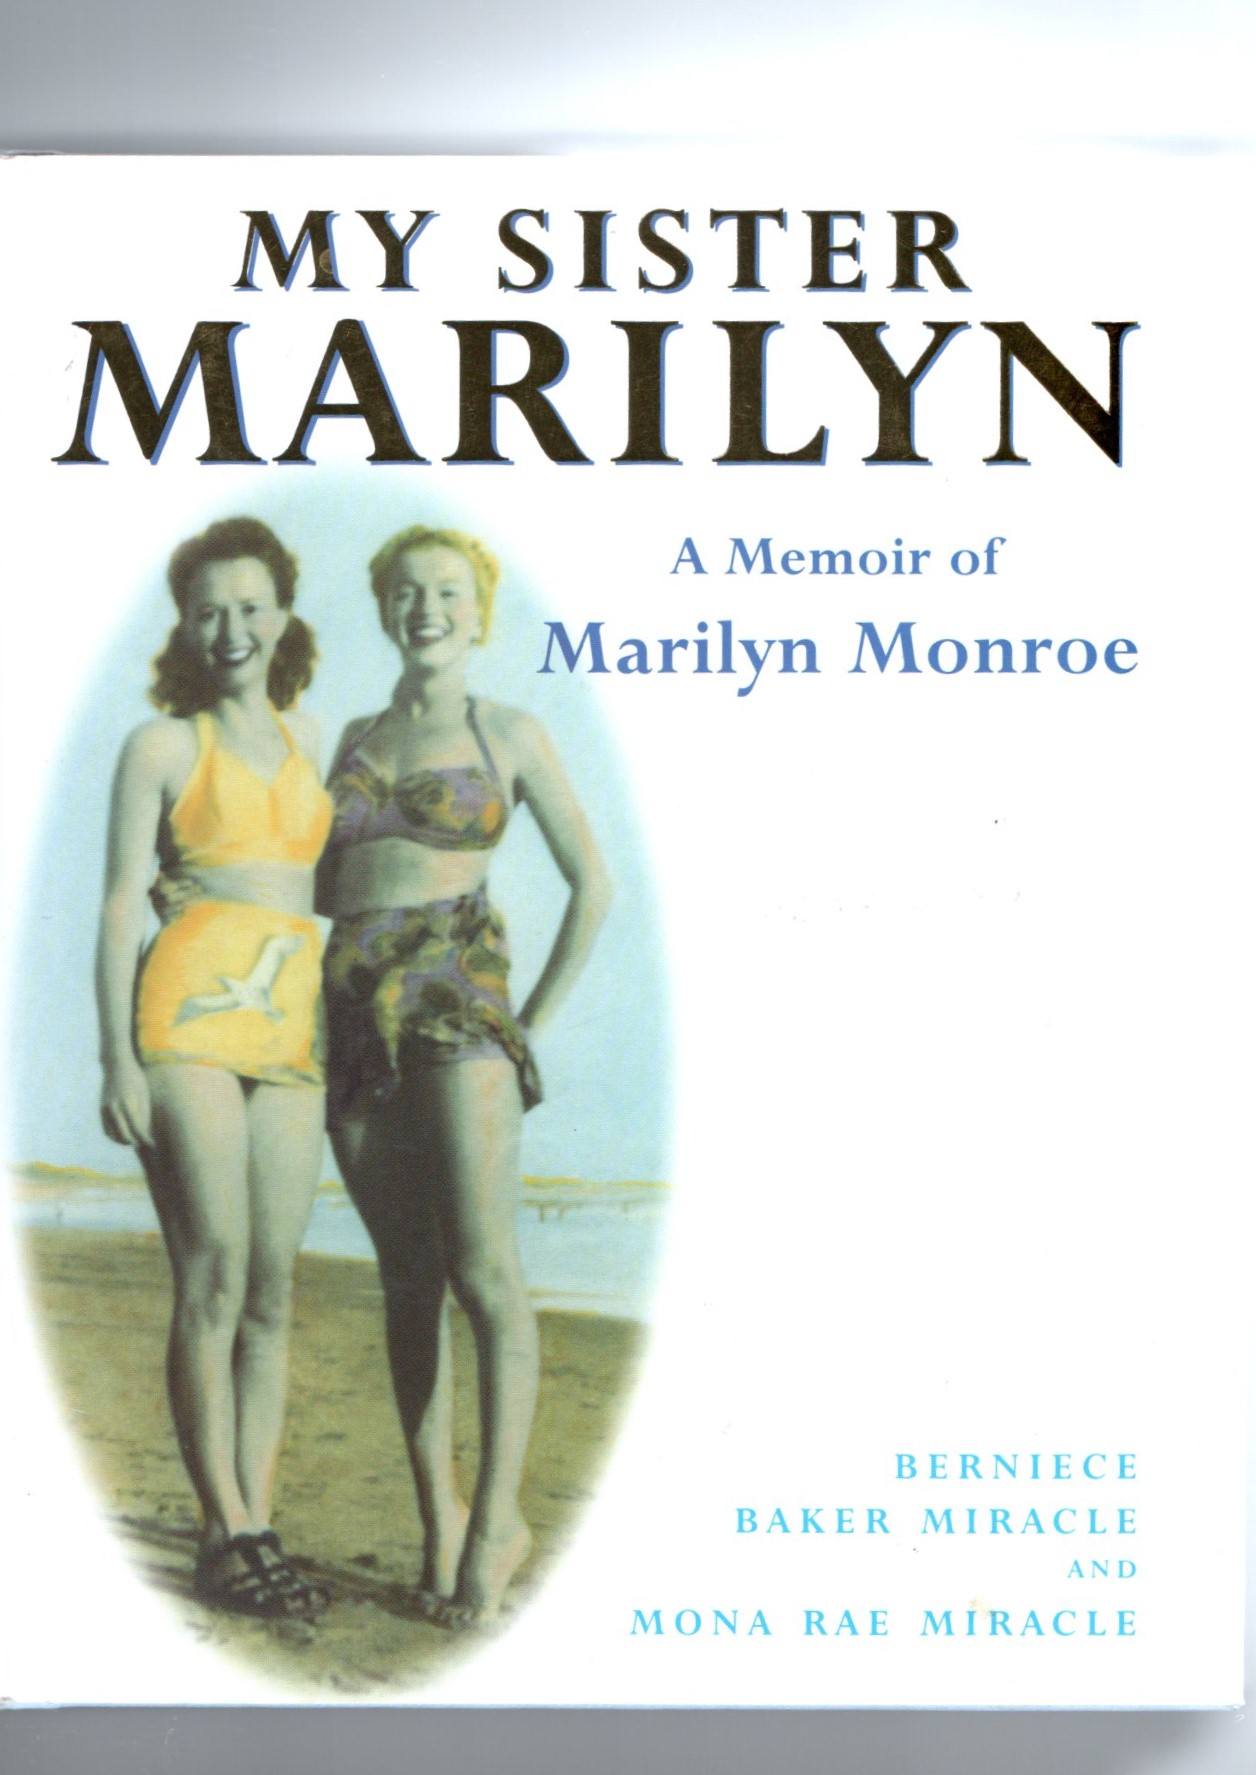 My Sister Marilyn - A Memoir of Marilyn Monroe - Berniece Baker Miracle